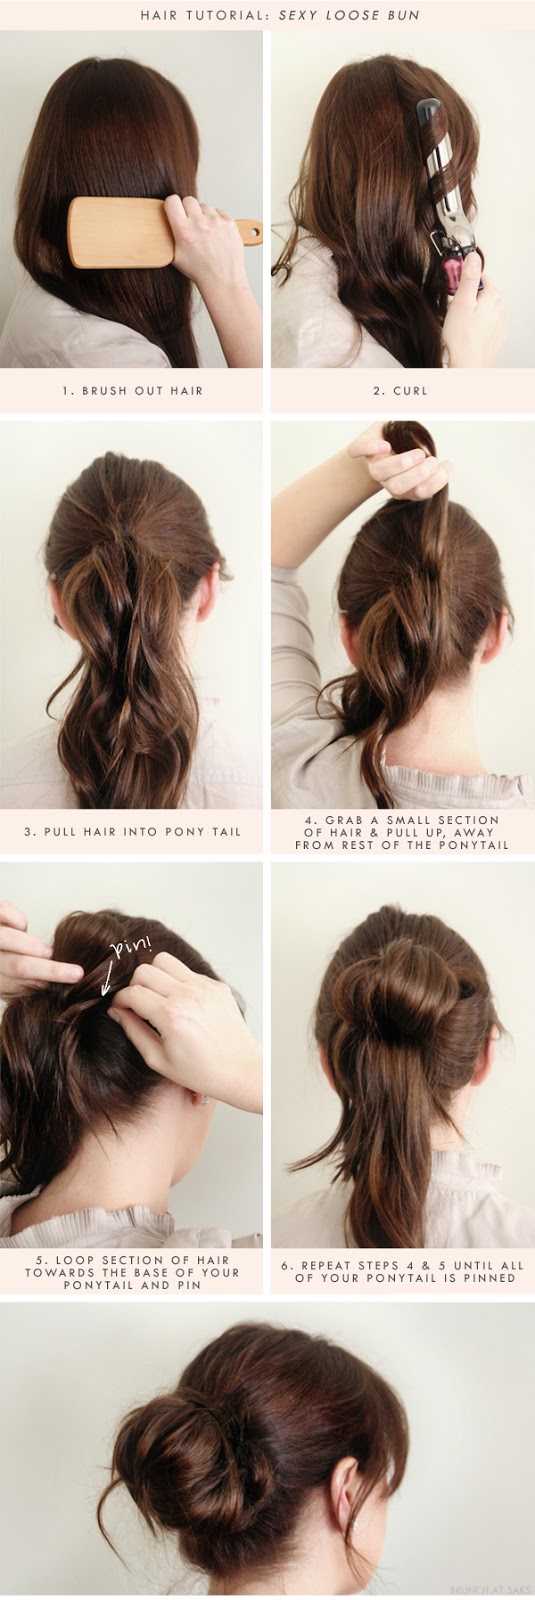 3 sexy loose bun hair tutorial